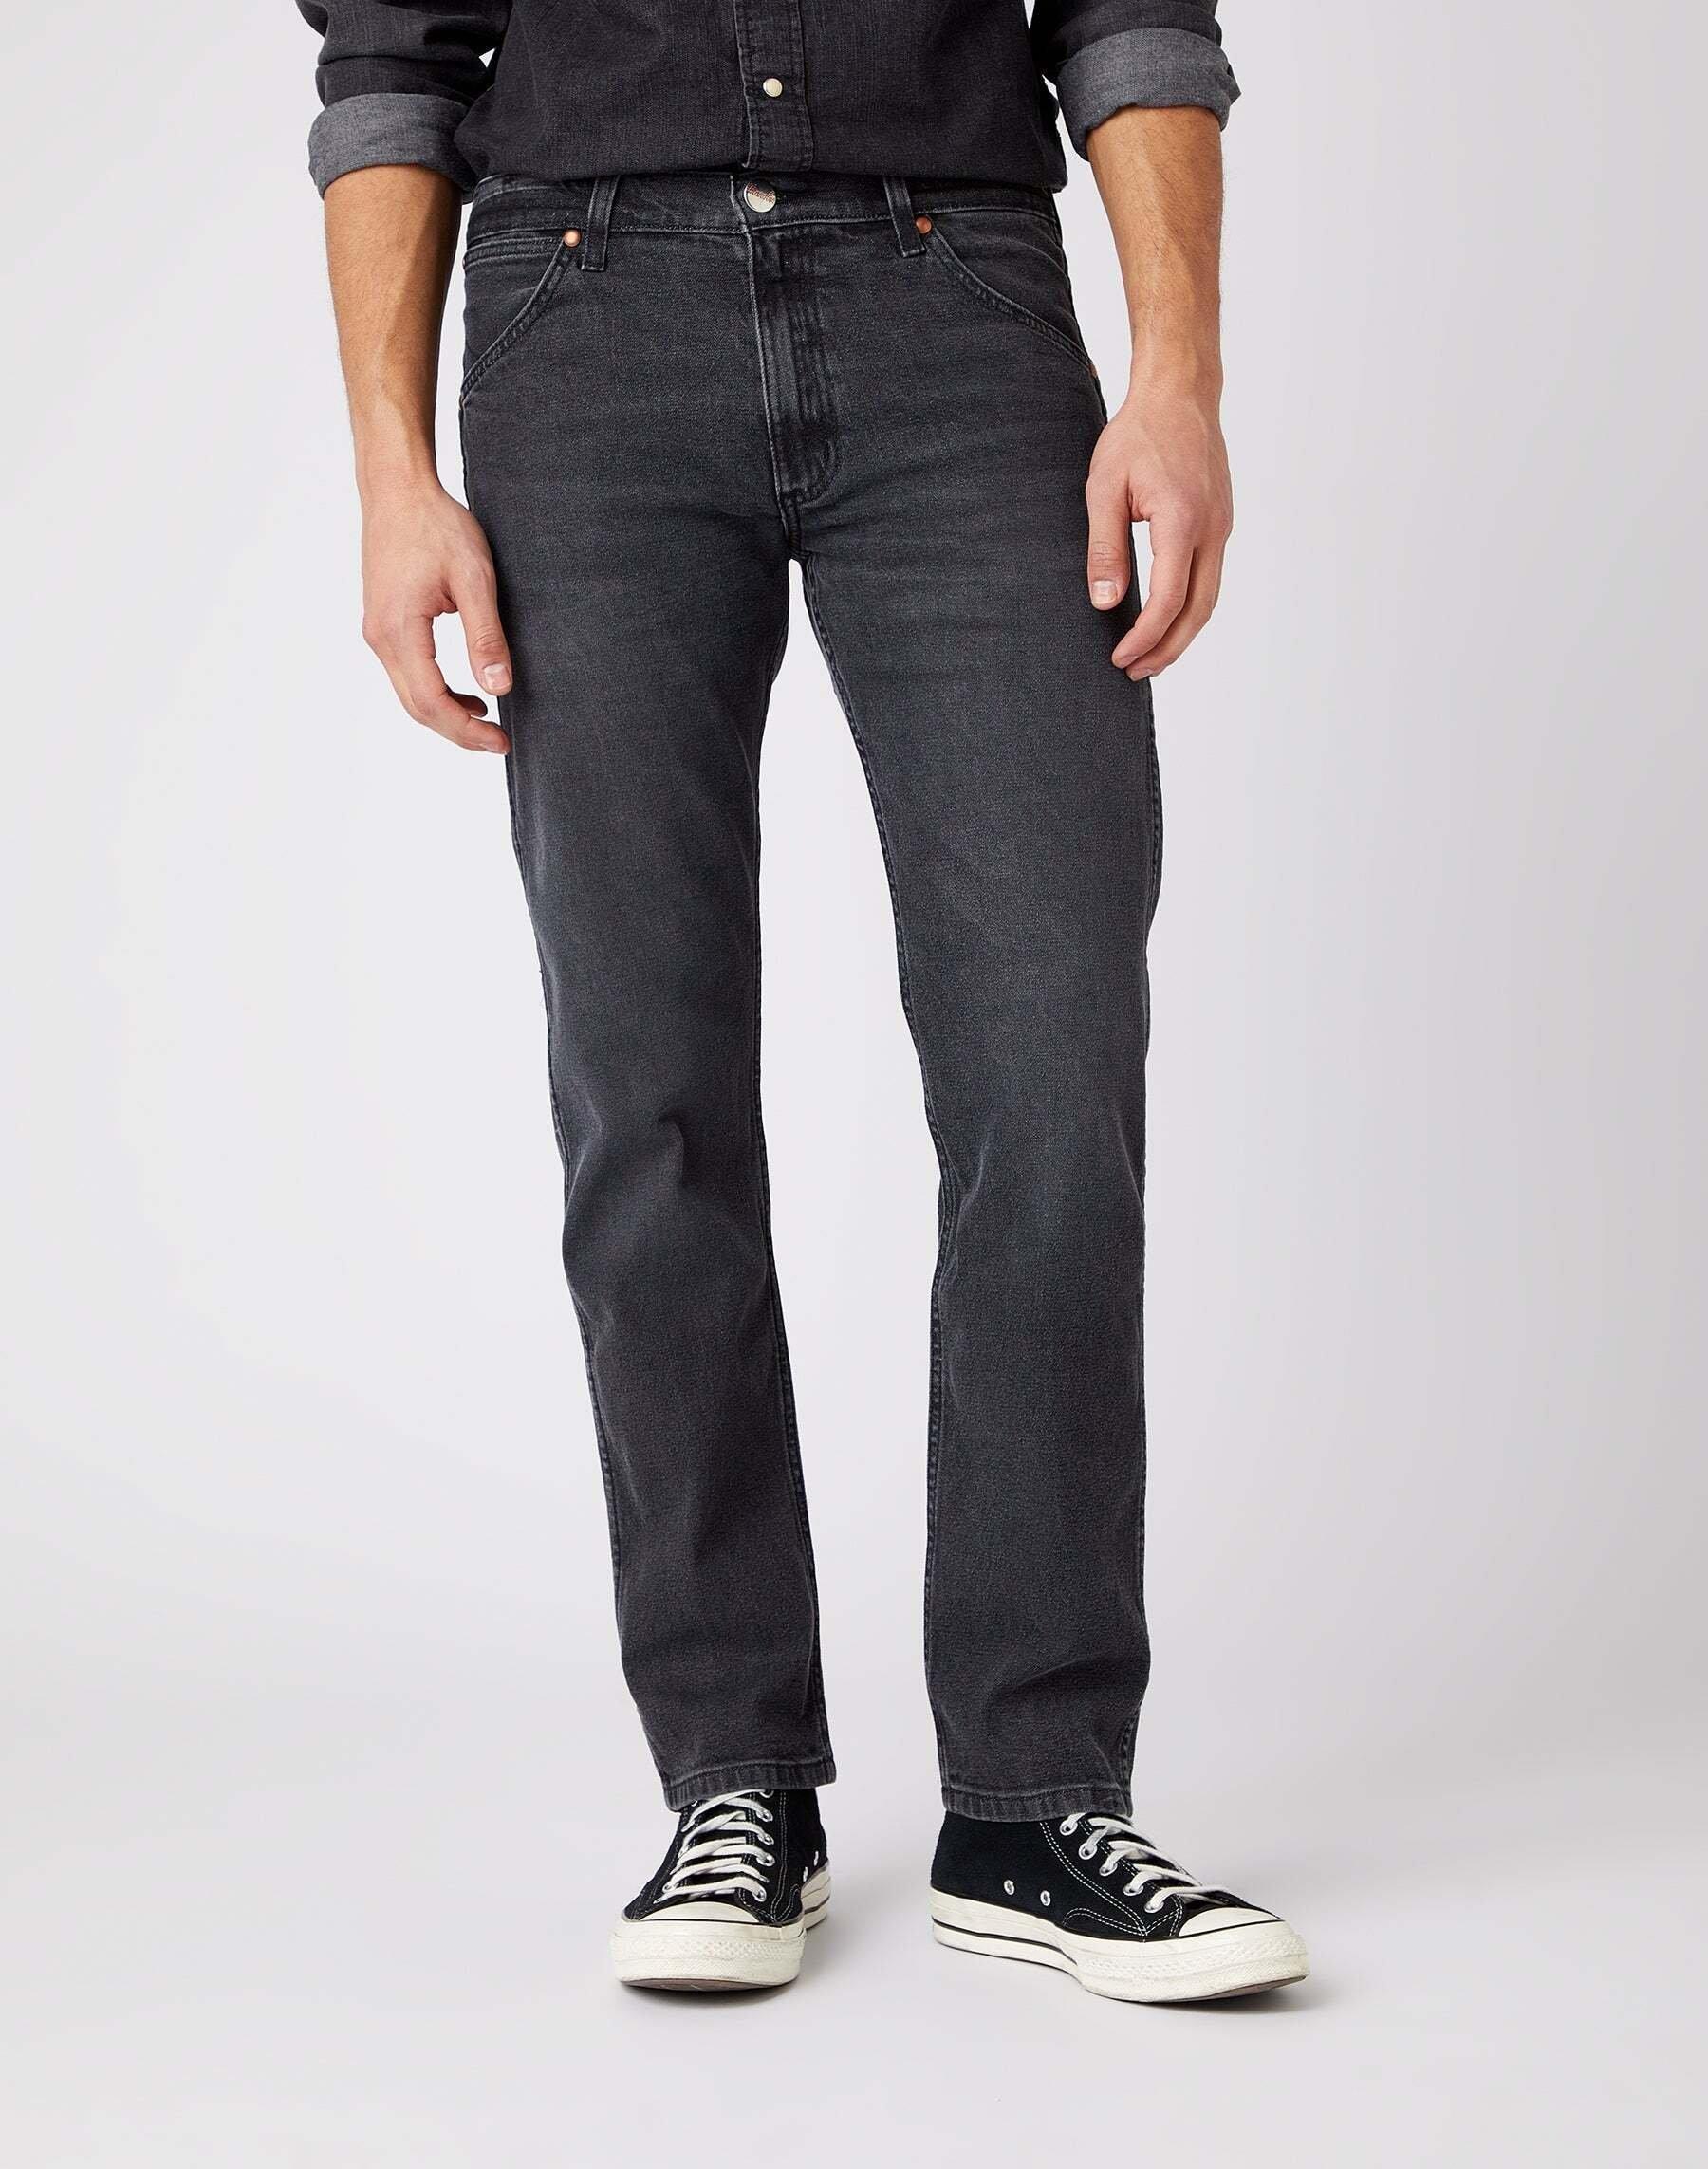 Jeans Slim Fit 11mwz Herren Schwarz L34/W30 von Wrangler